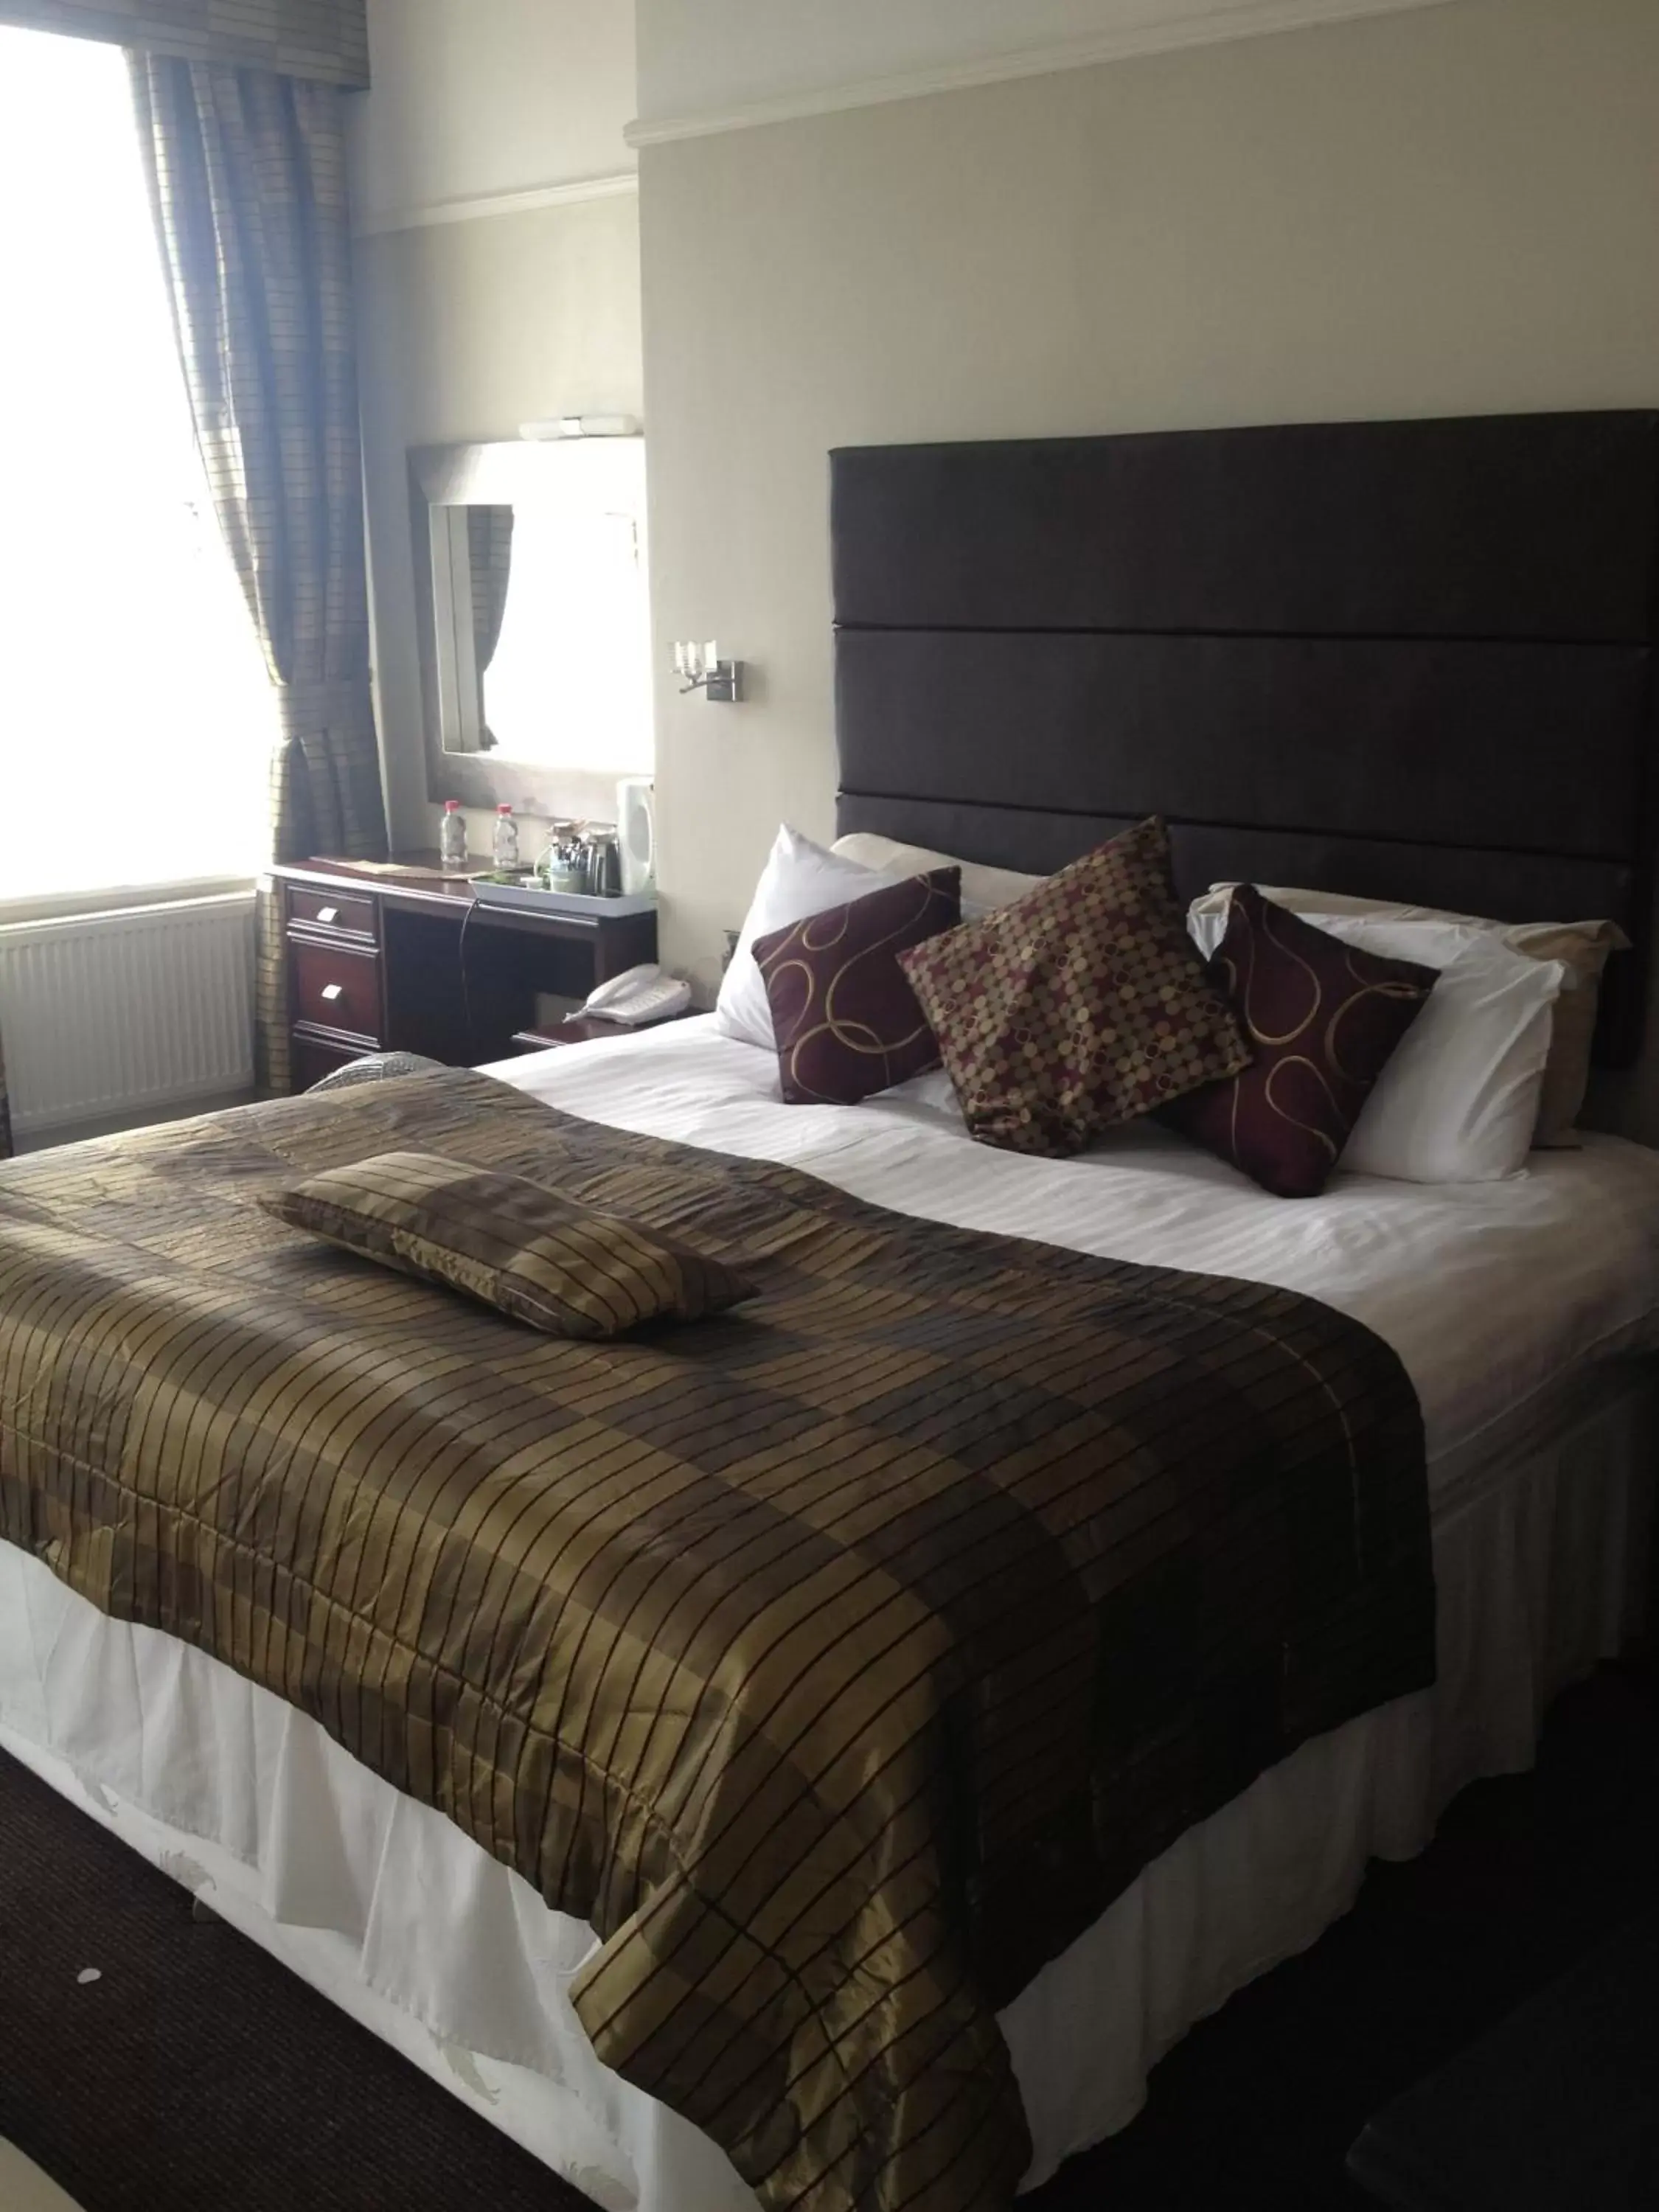 Bed in Best Western Hotel Hatfield